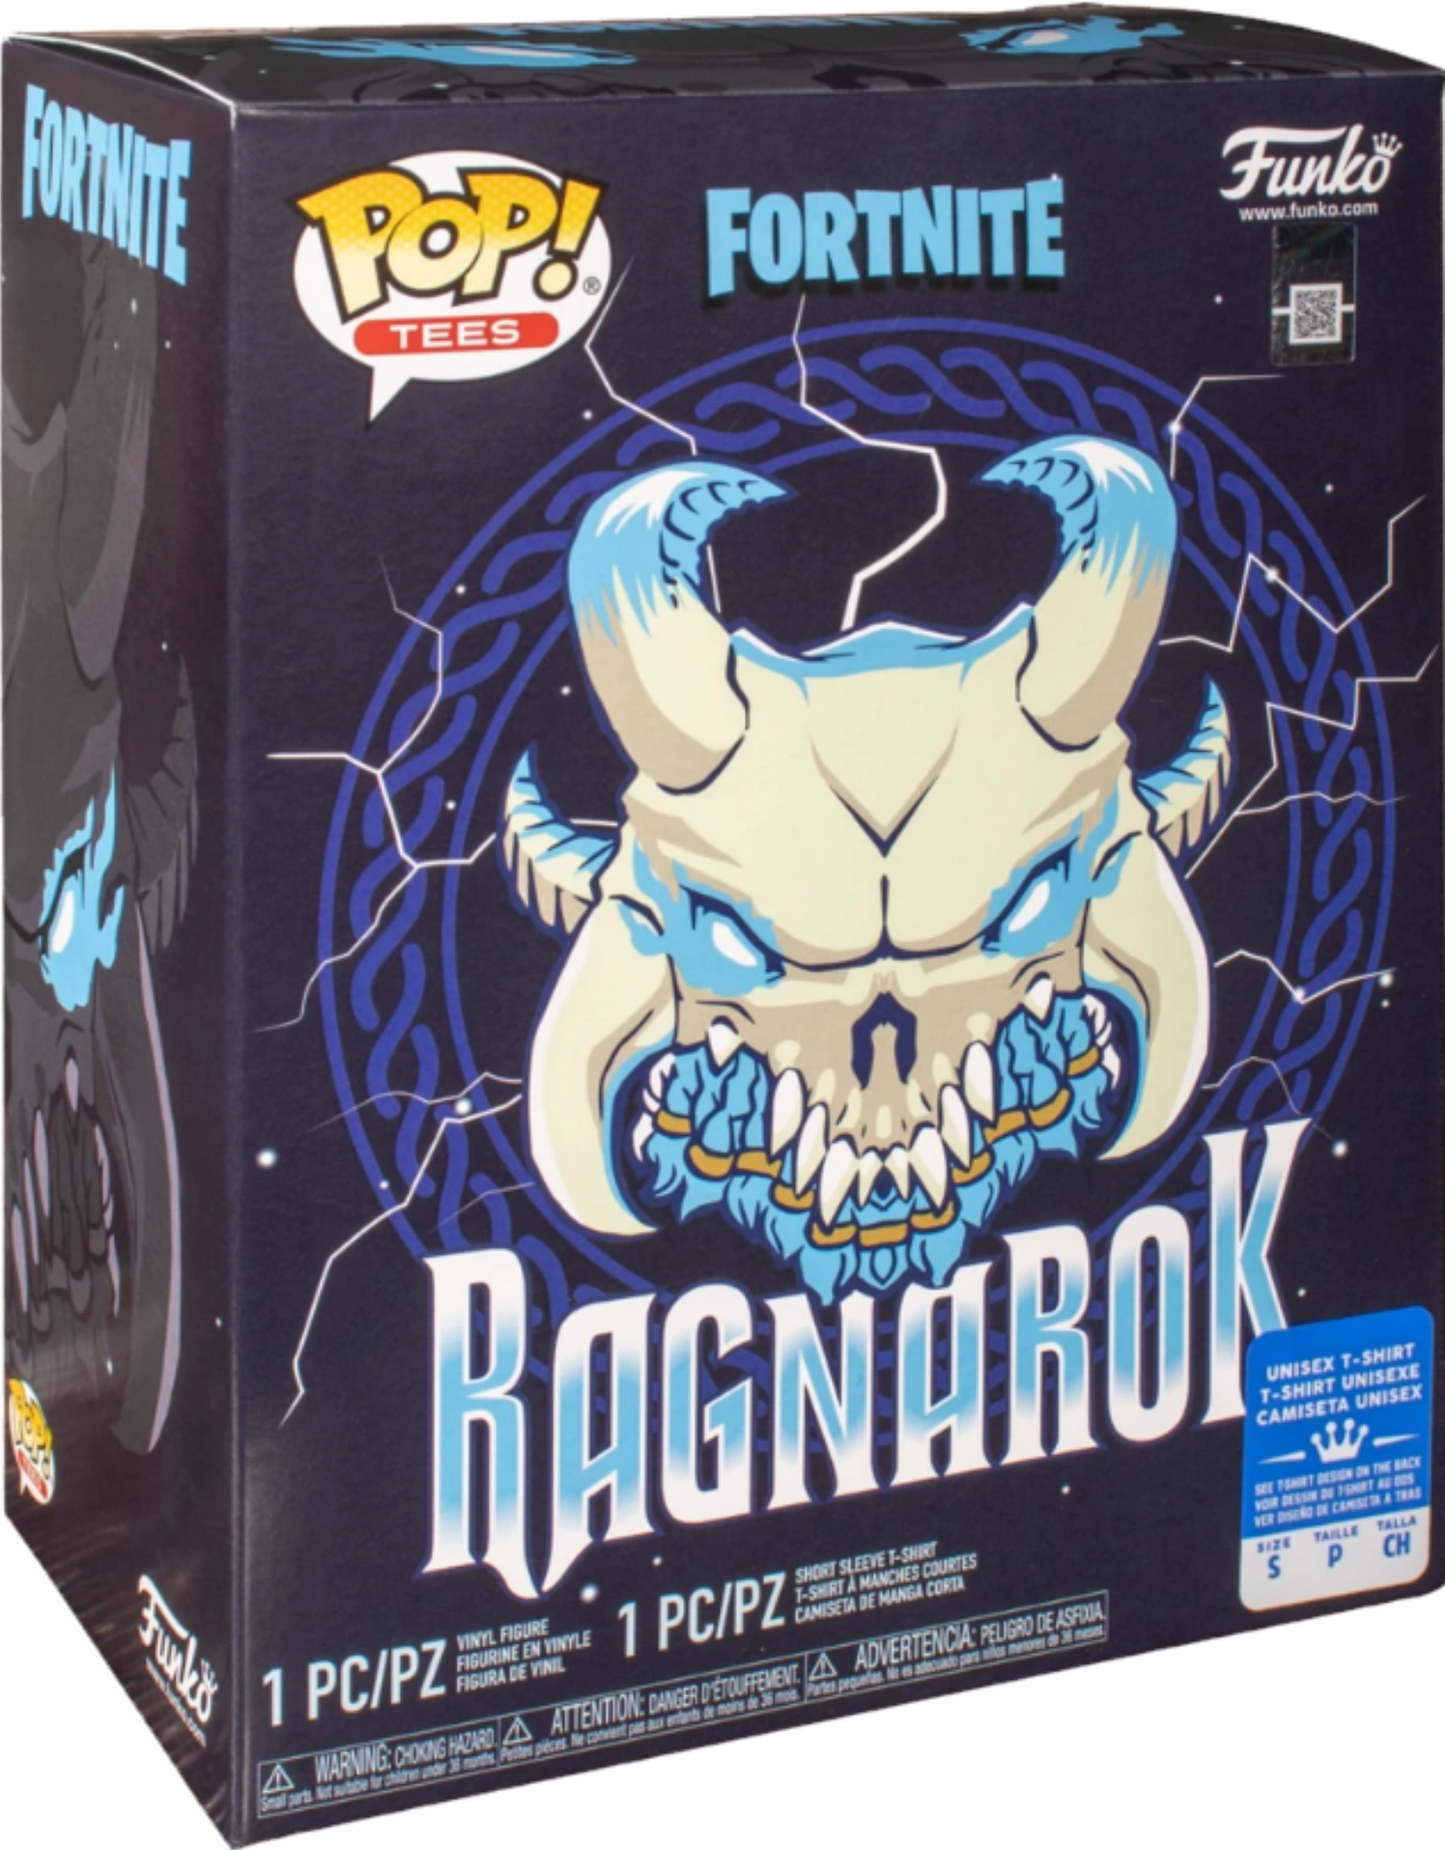 Fortnight Ragnarok Glow In The Dark Pop! & Tee Exclusive Collectors Box Set